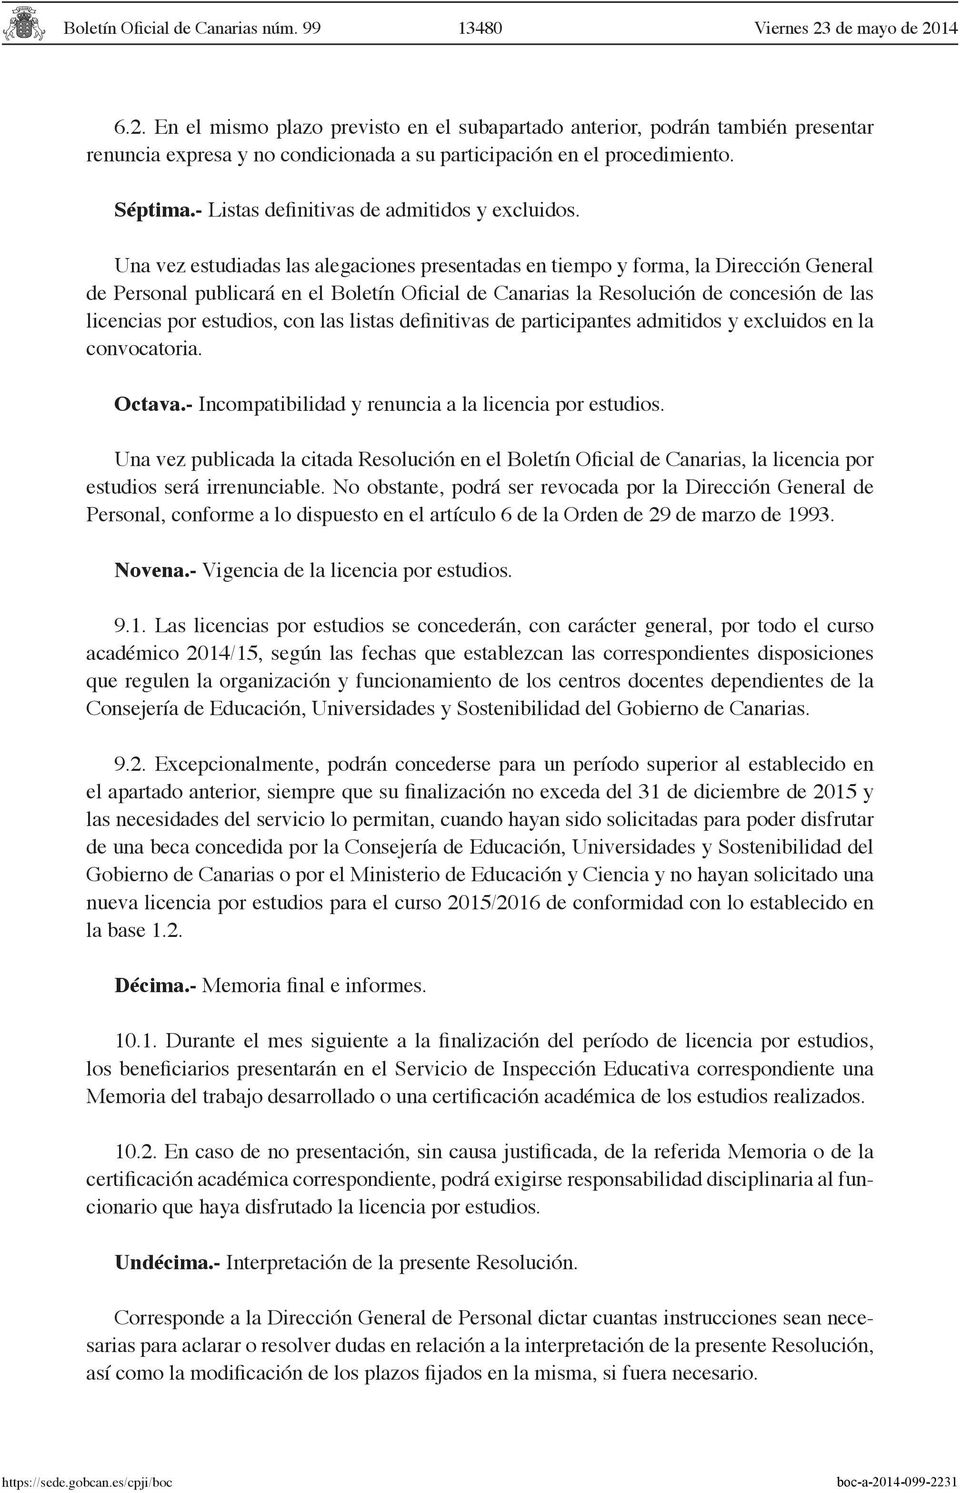 Una vez estudiadas las alegaciones presentadas en tiempo y forma, la Dirección General de Personal publicará en el Boletín Oficial de Canarias la Resolución de concesión de las licencias por